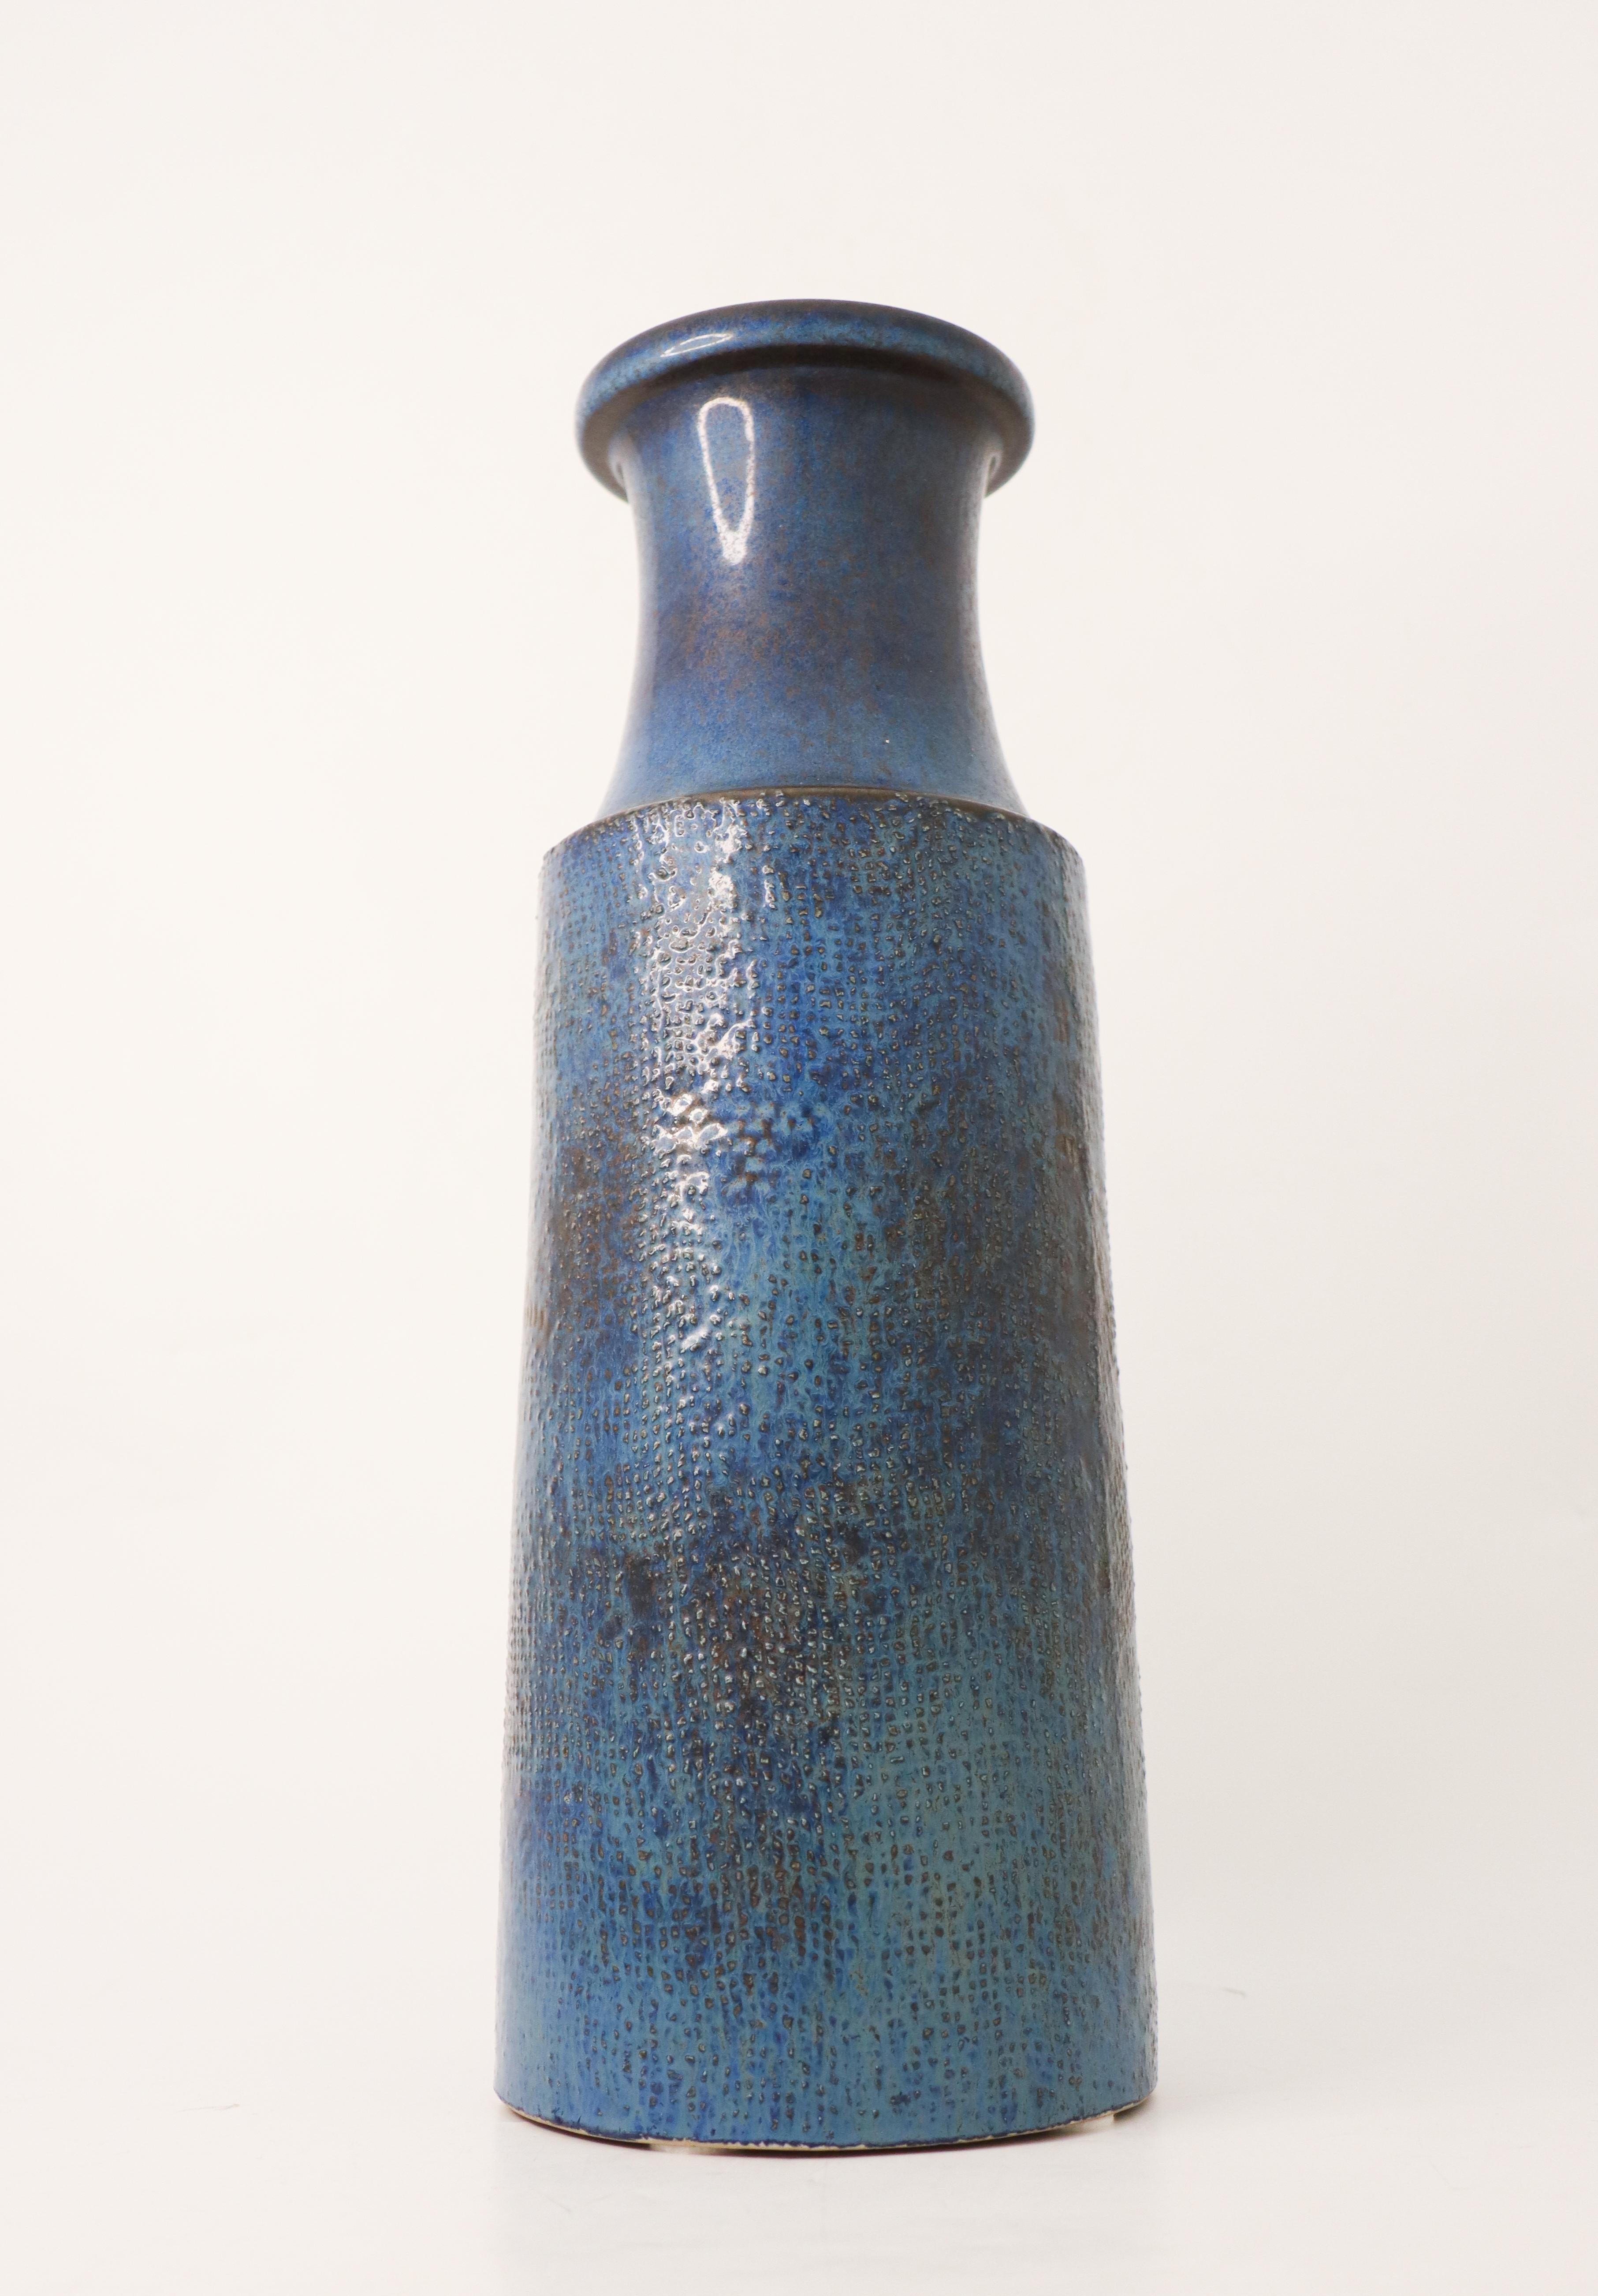 Große Vase aus blauem Steingut mit Reliefdekor, entworfen von Stig Lindberg bei Gustavsberg. Er ist 39 cm hoch und in sehr gutem Zustand. Diese Vase wurde 1964 entworfen. 